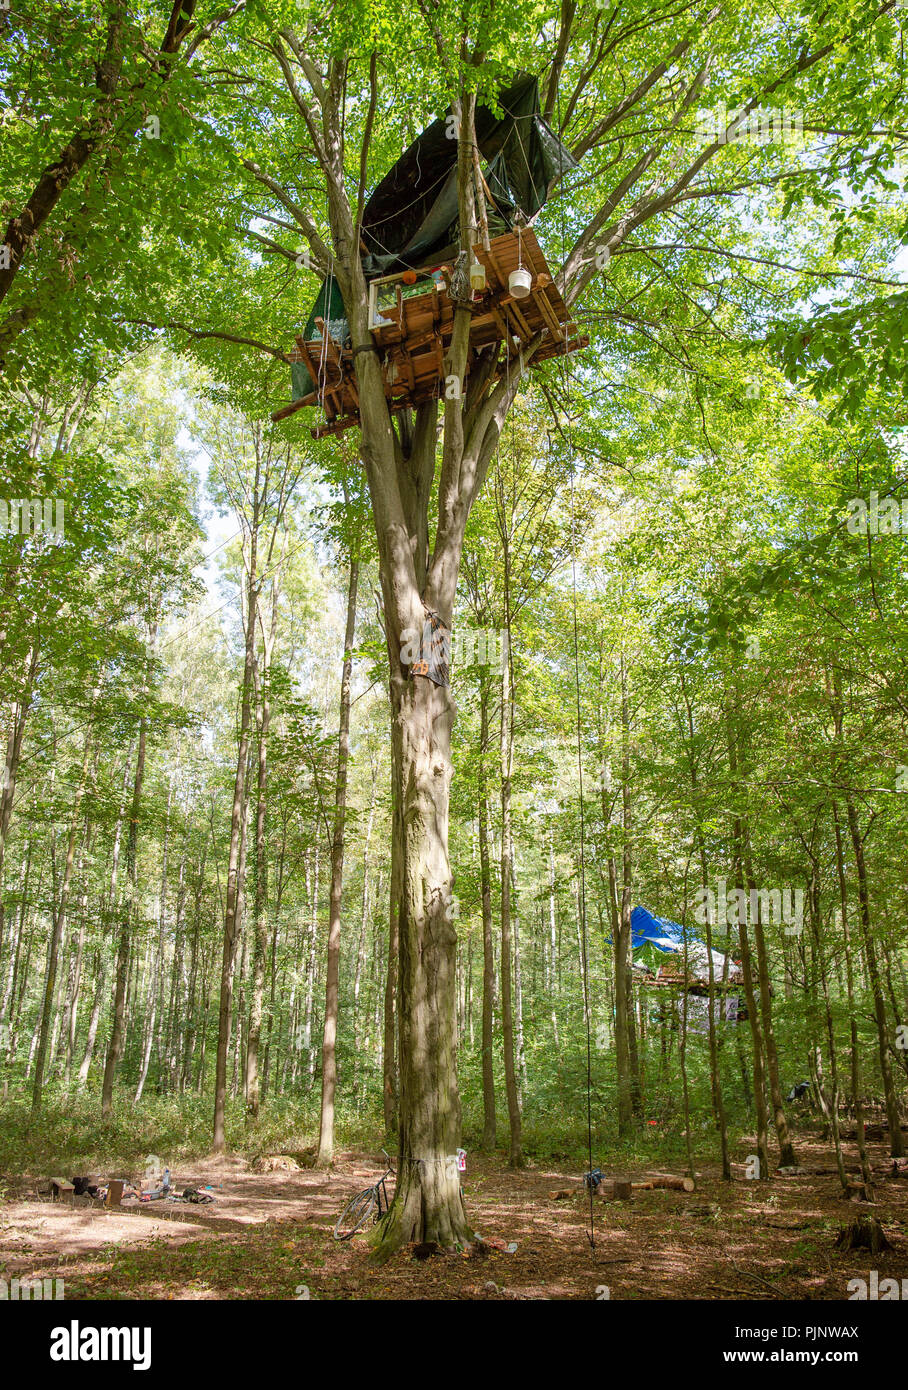 08 septembre 2018, l'Allemagne, Kerpen:Les militants ont construit une maison de l'arbre dans la forêt de Hambach. Les militants tentent d'empêcher l'effacement de la forêt de Hambach par l'entreprise de l'énergie RWE. Les militants ont annoncé les mesures de dégagement de la compagnie d'énergie RWE dans la forêt de Hambach. Photo : Christophe Gateau/dpa Banque D'Images